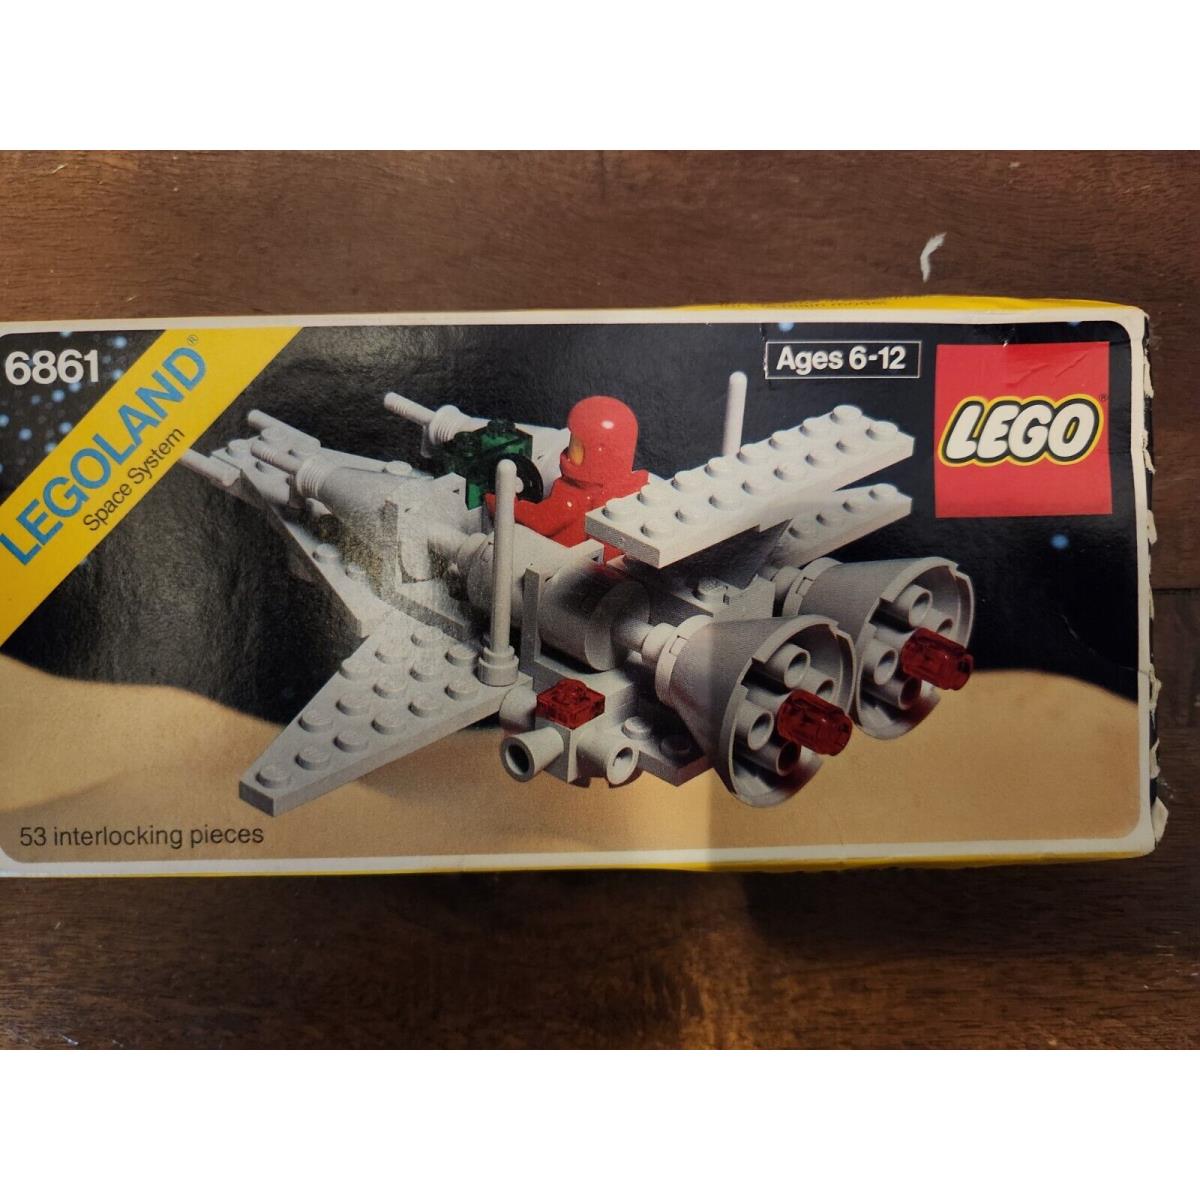 Box Wear Lego Classic Space 6861: X1 Patrol Craft